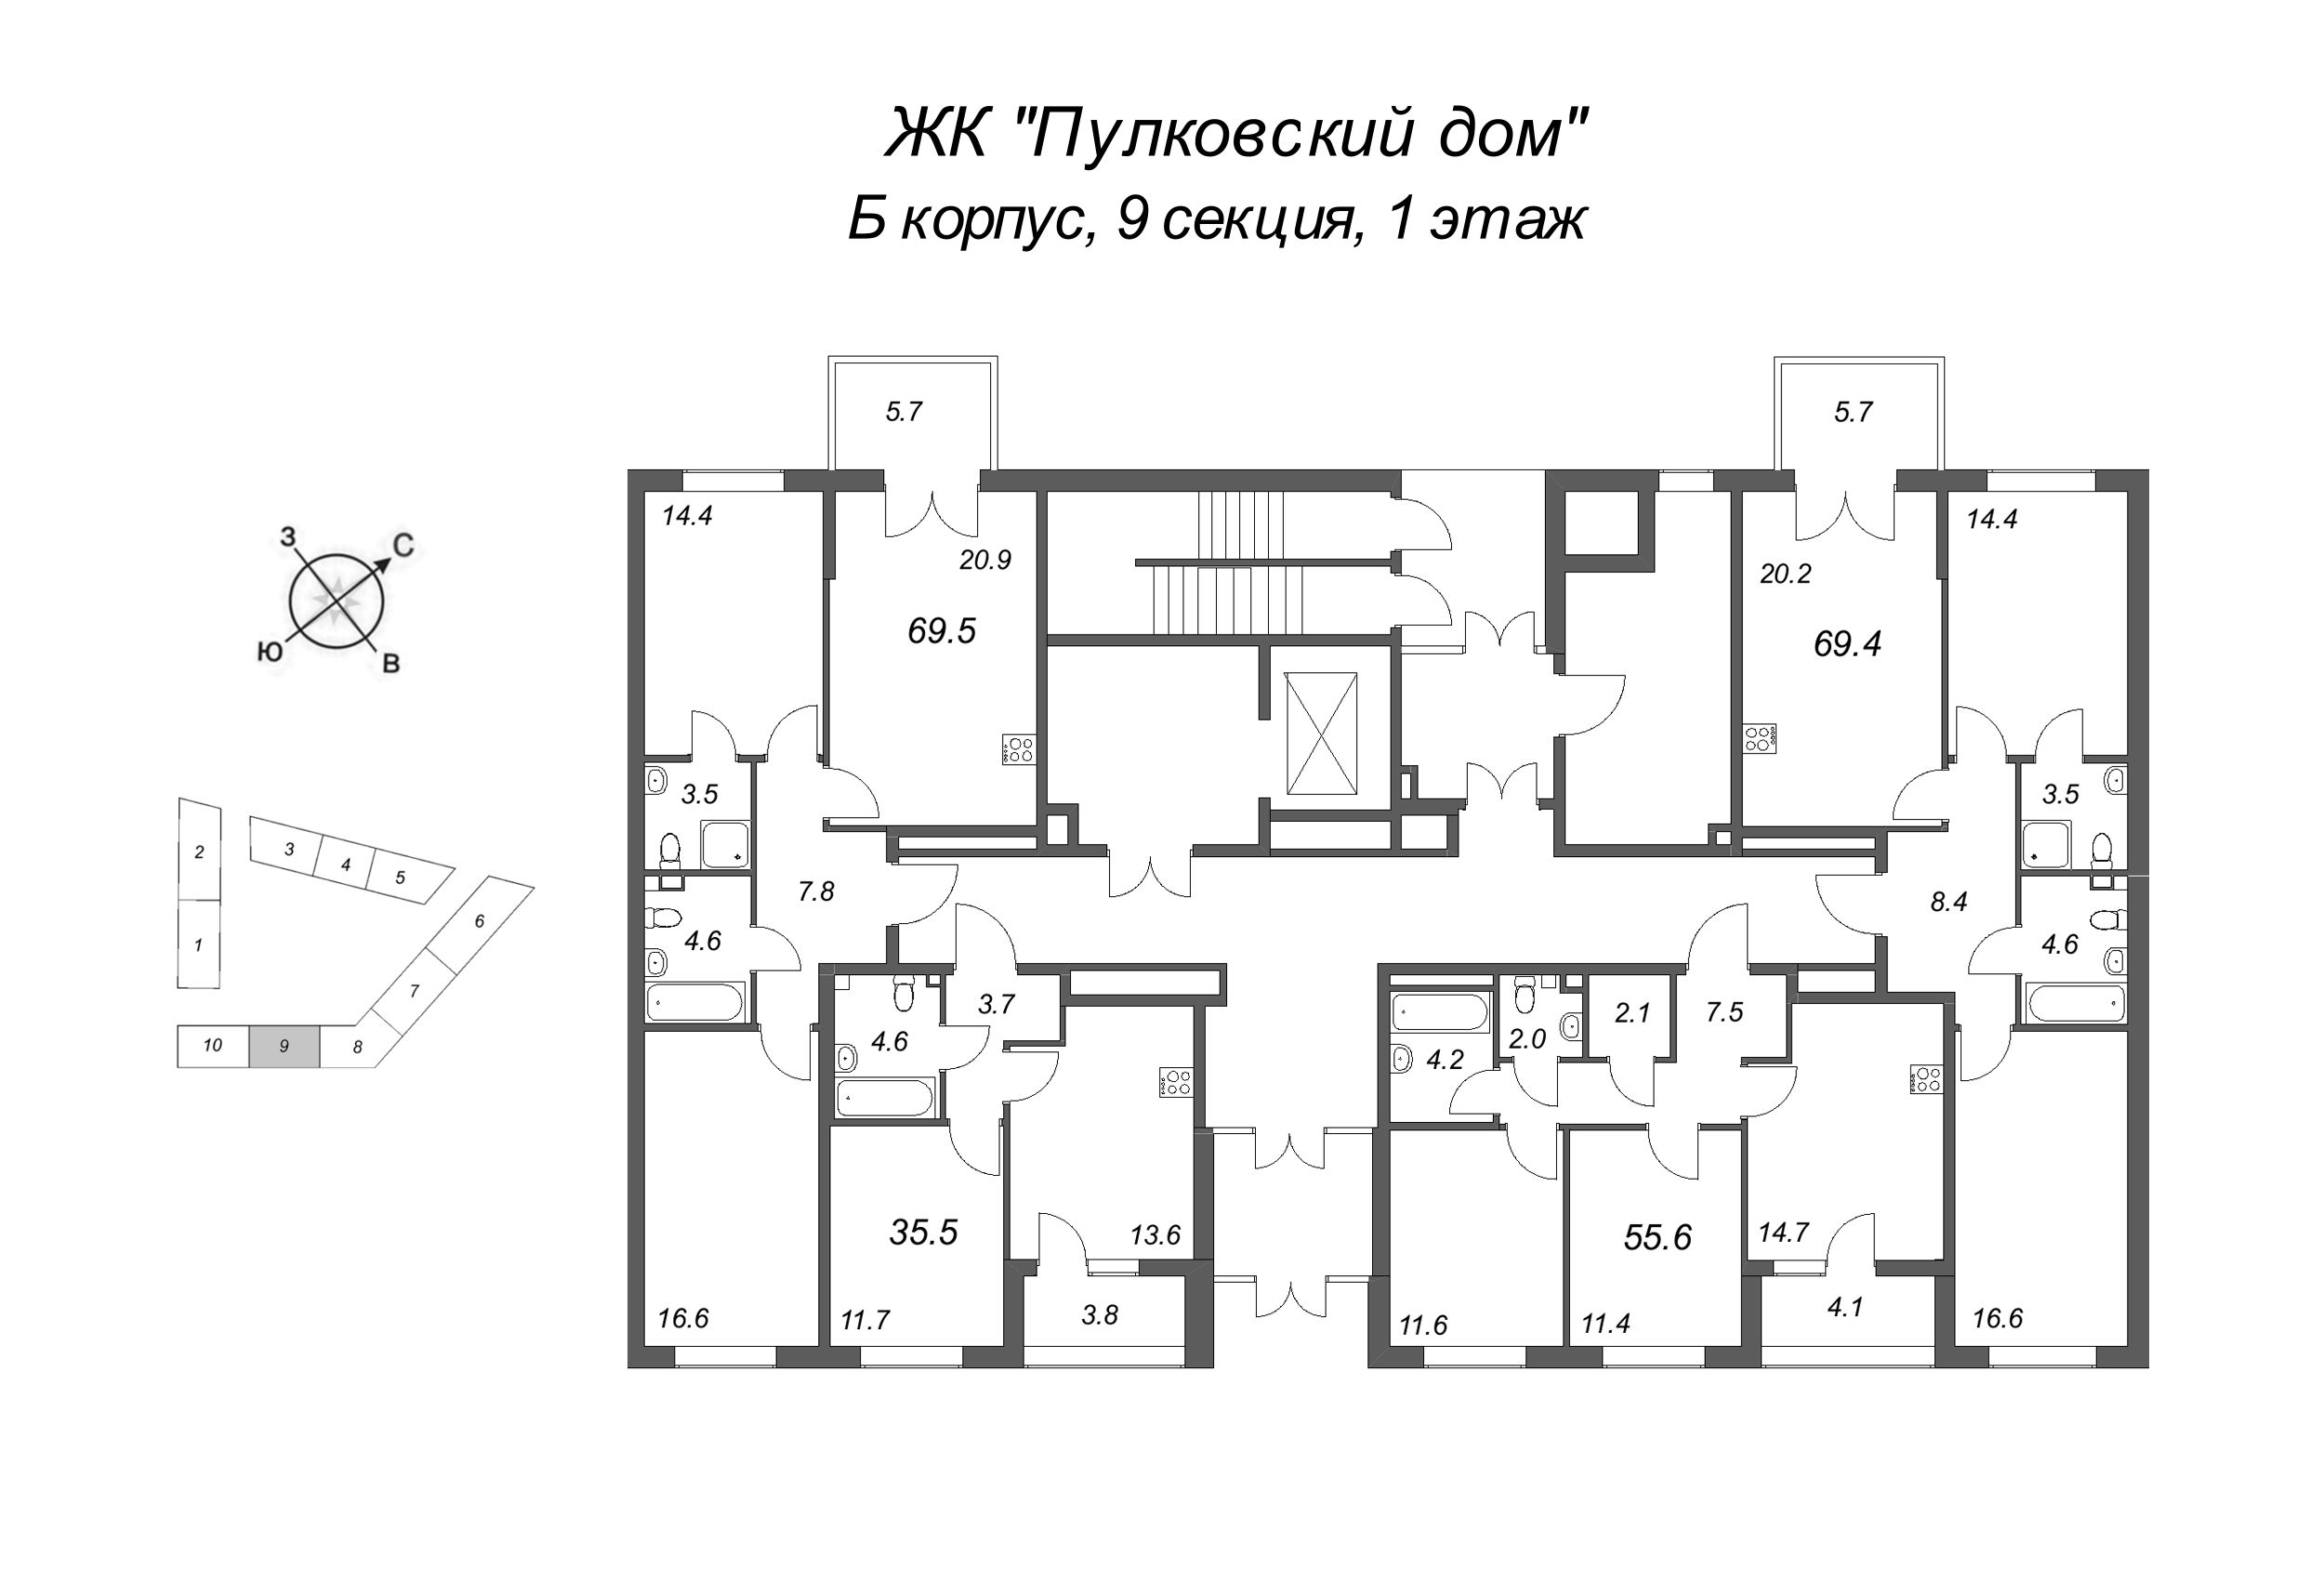 3-комнатная (Евро) квартира, 69.5 м² в ЖК "Пулковский дом" - планировка этажа